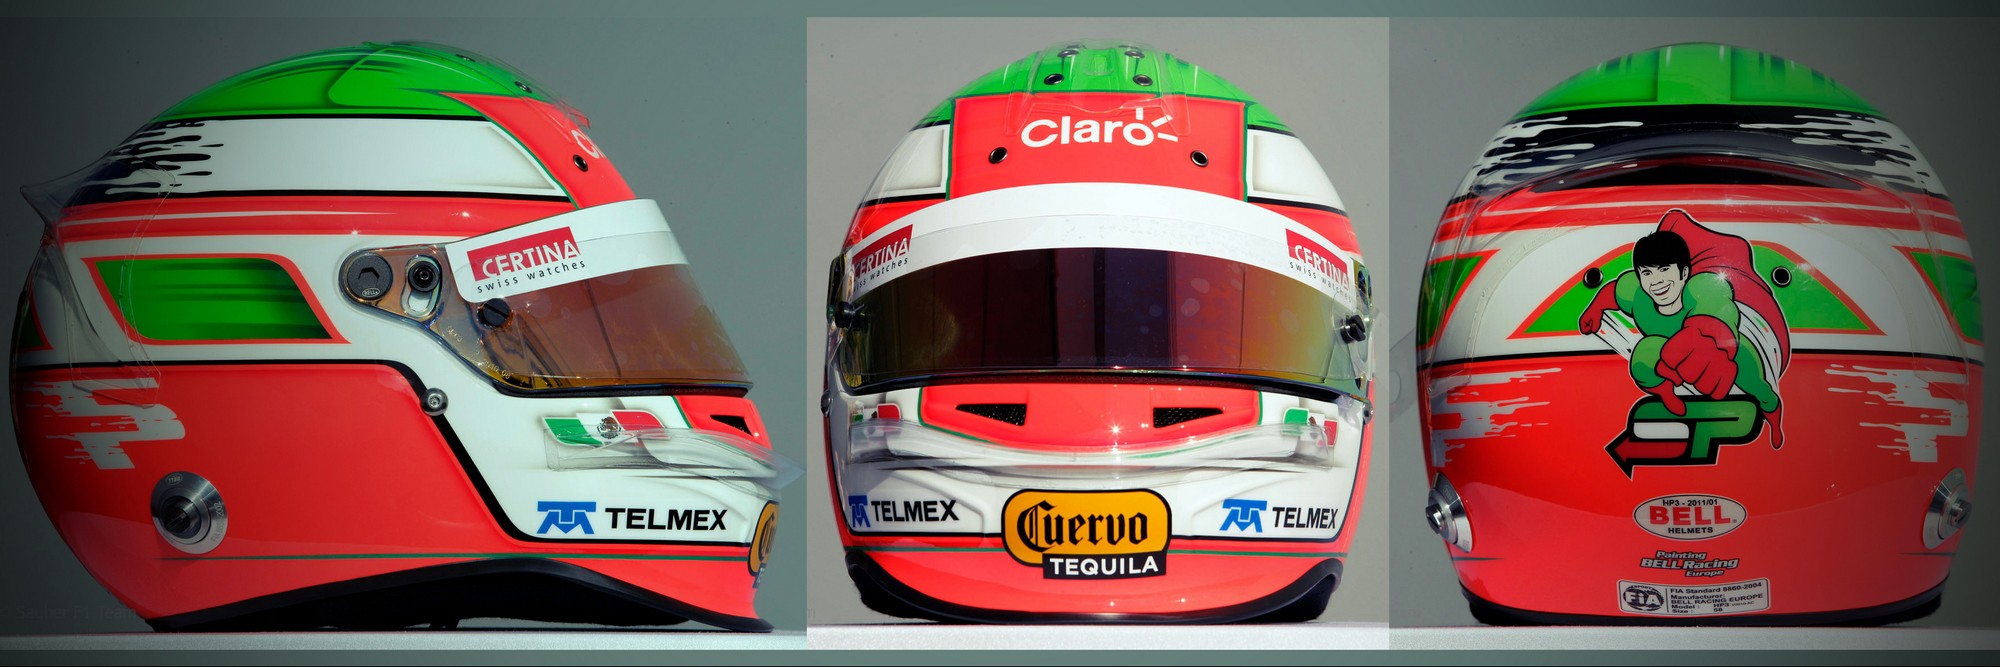 Шлем Серхио Переса на сезон 2011 года | 2011 helmet of Sergio Perez